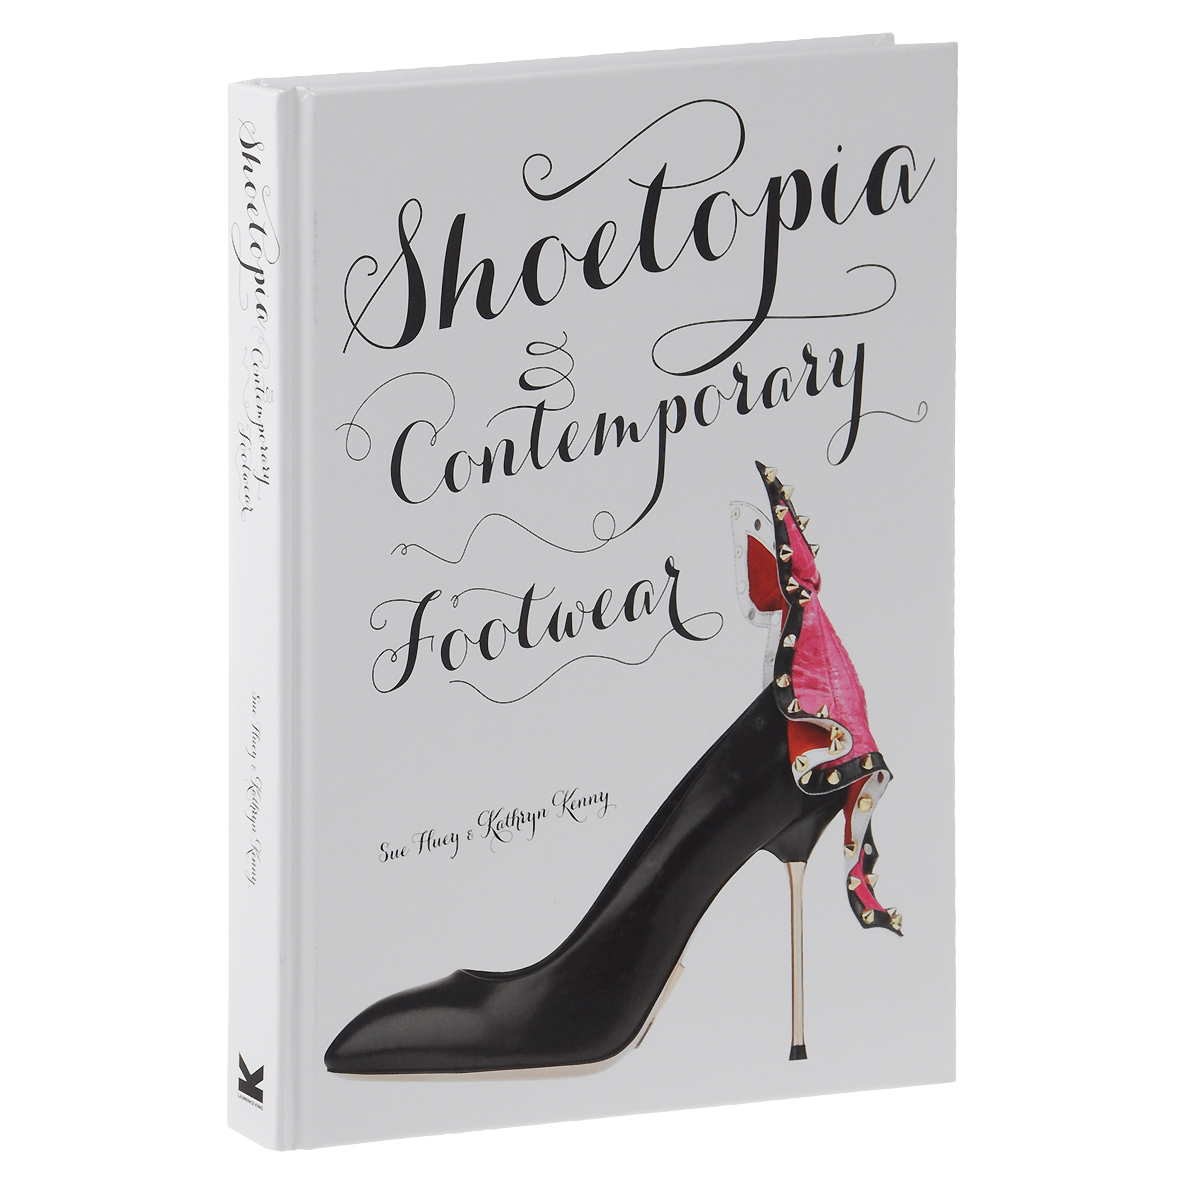 Sue Huey & Kathryn Kenny - «Shoetopia: Contemporary Footwear»